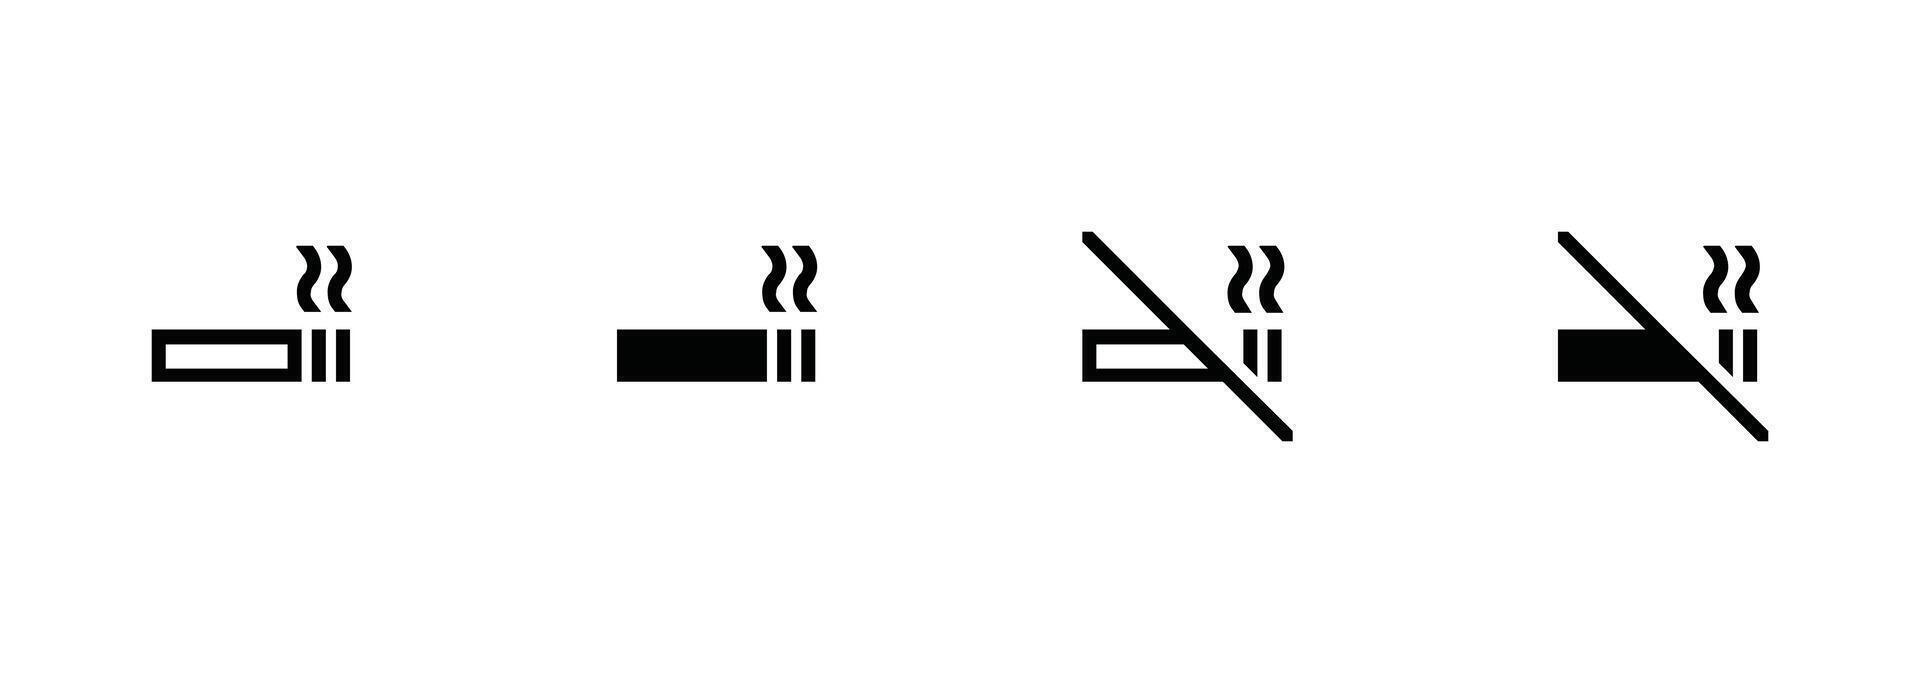 rökning område och icke rökning område. rökning, Nej rökning ikon tecken symbol design. vektor